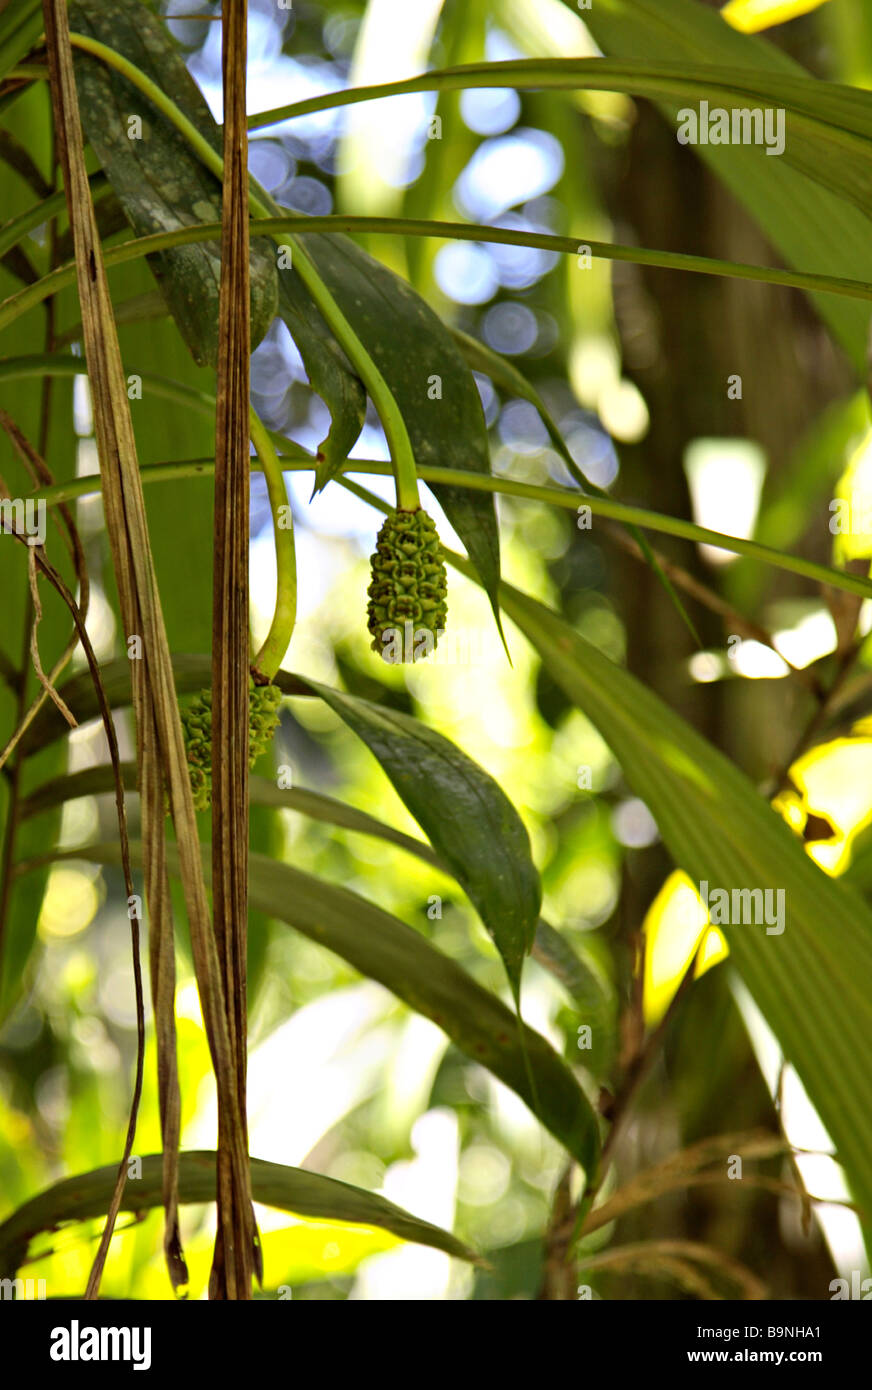 Les plantes tropicales dans la Forêt Tropicale Atlantique Ecoparque de una Bahia Brésil Amérique du Sud Banque D'Images